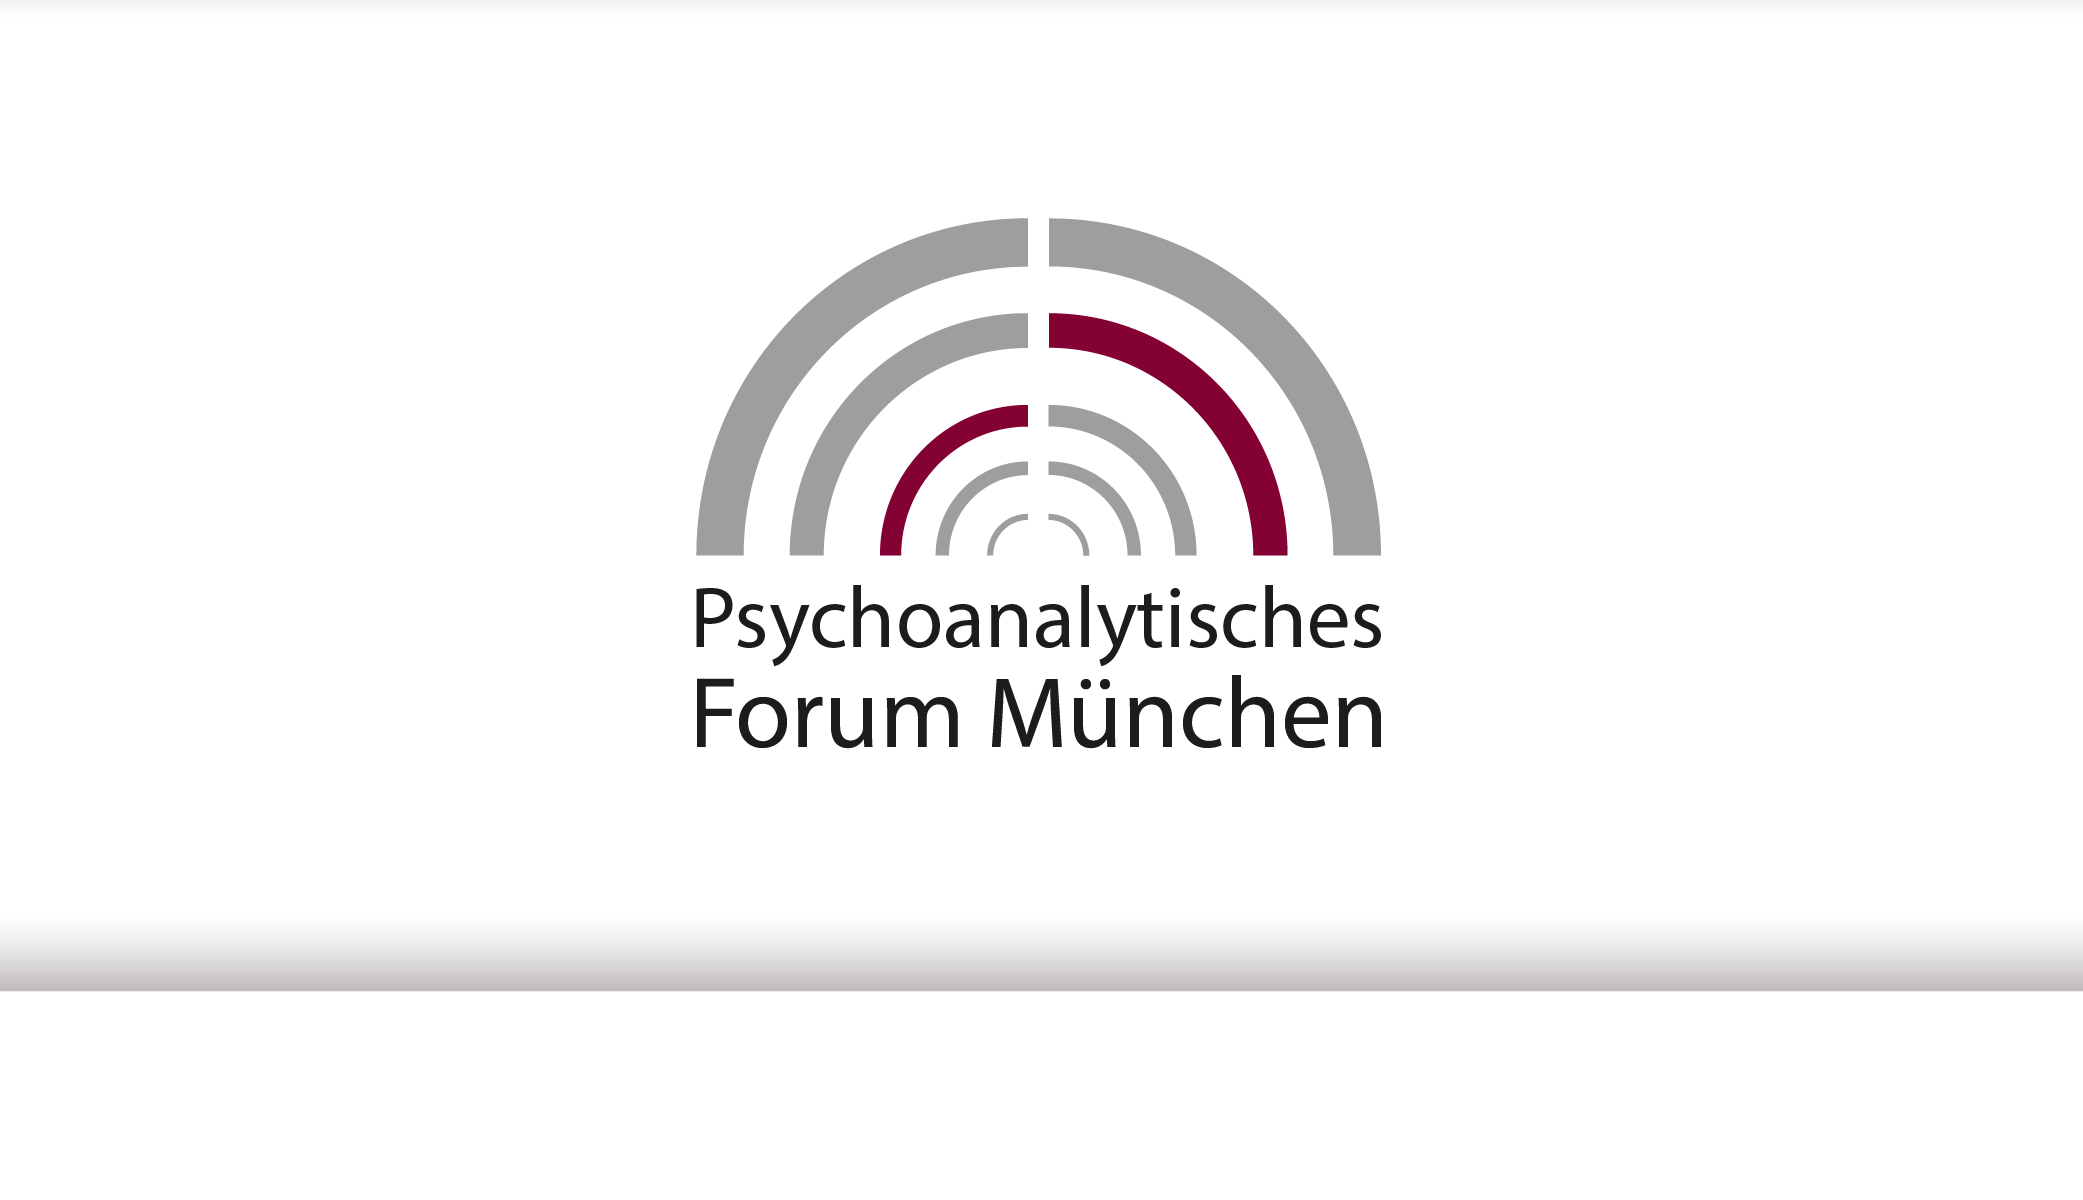 Psychoanalytisches Forum München e.V.